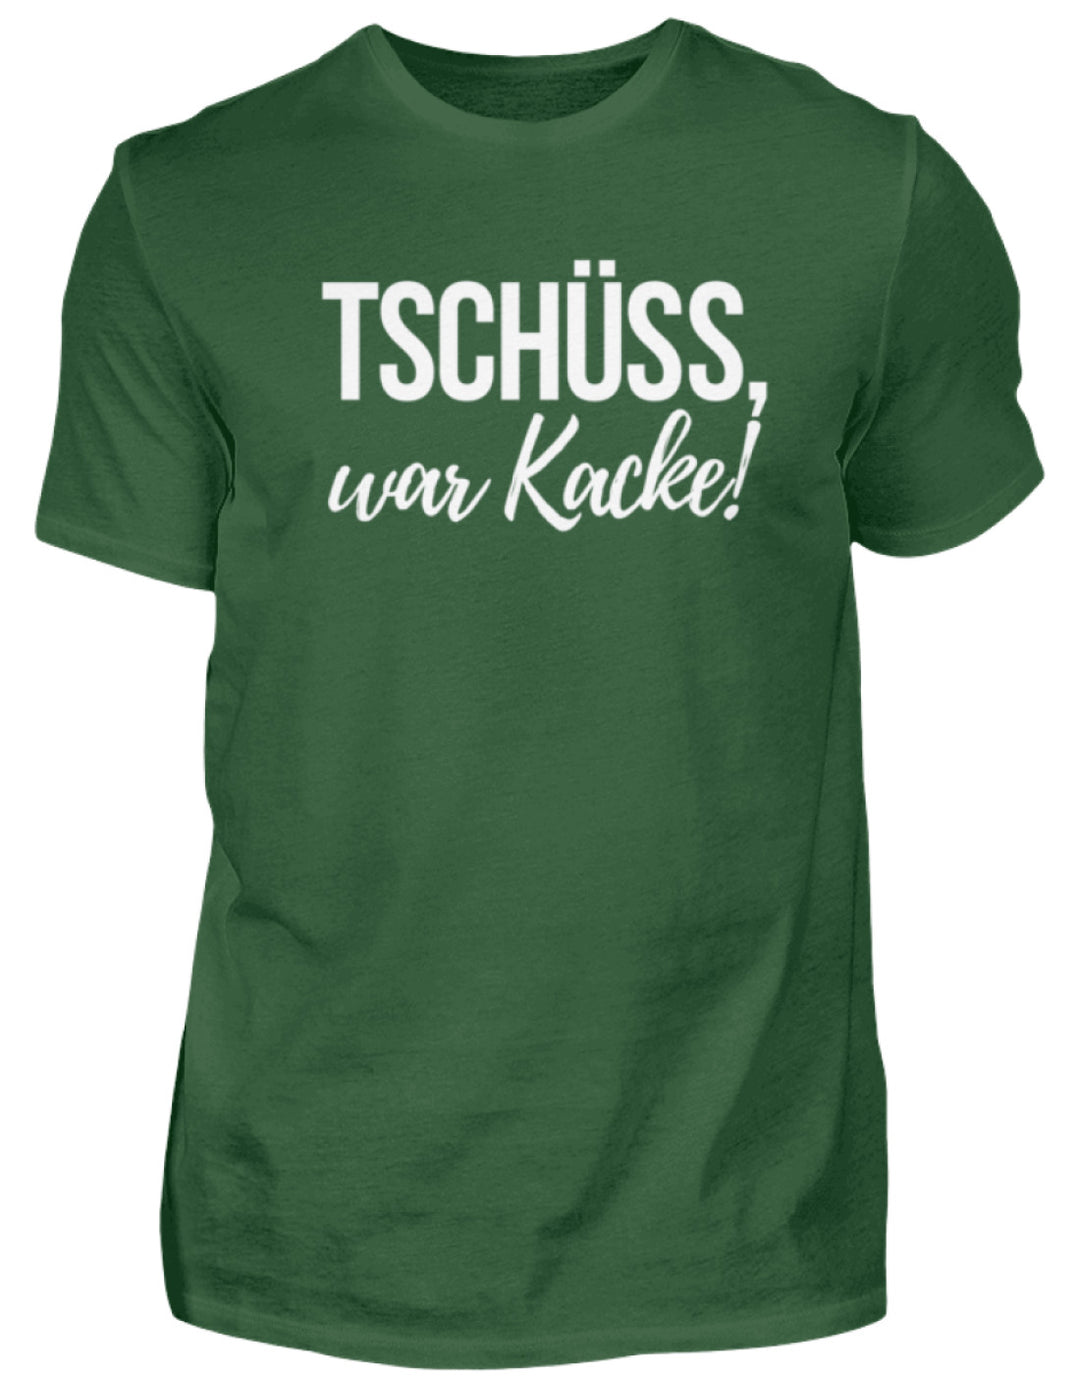 Tschüss, war Kacke!  - Herren Shirt - Words on Shirts